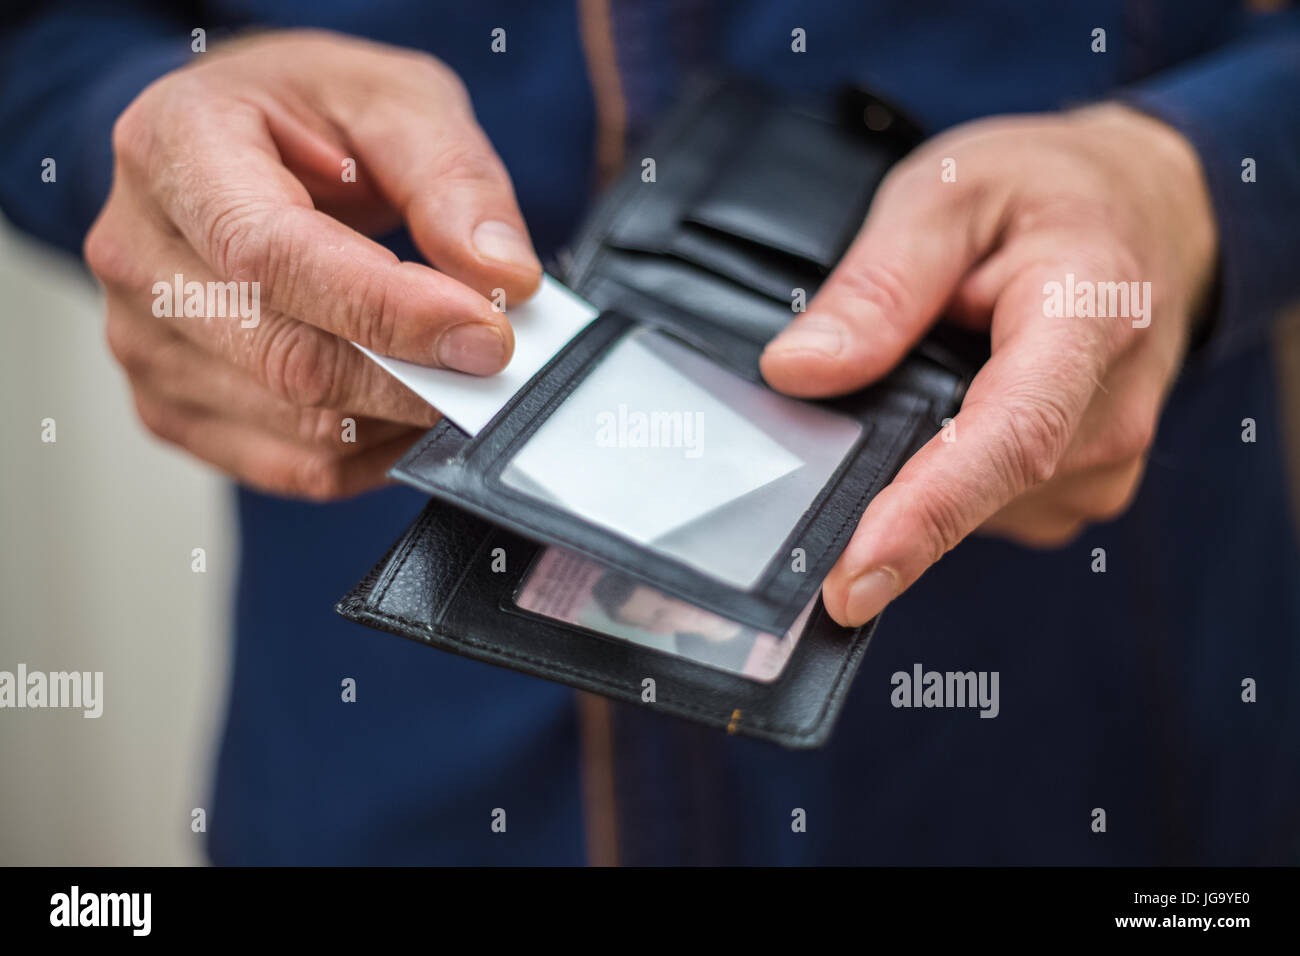 Carte bancaire, carte d'affaires, portefeuille, businessman tient dans ses  mains et mettre la carte dans votre portefeuille Photo Stock - Alamy